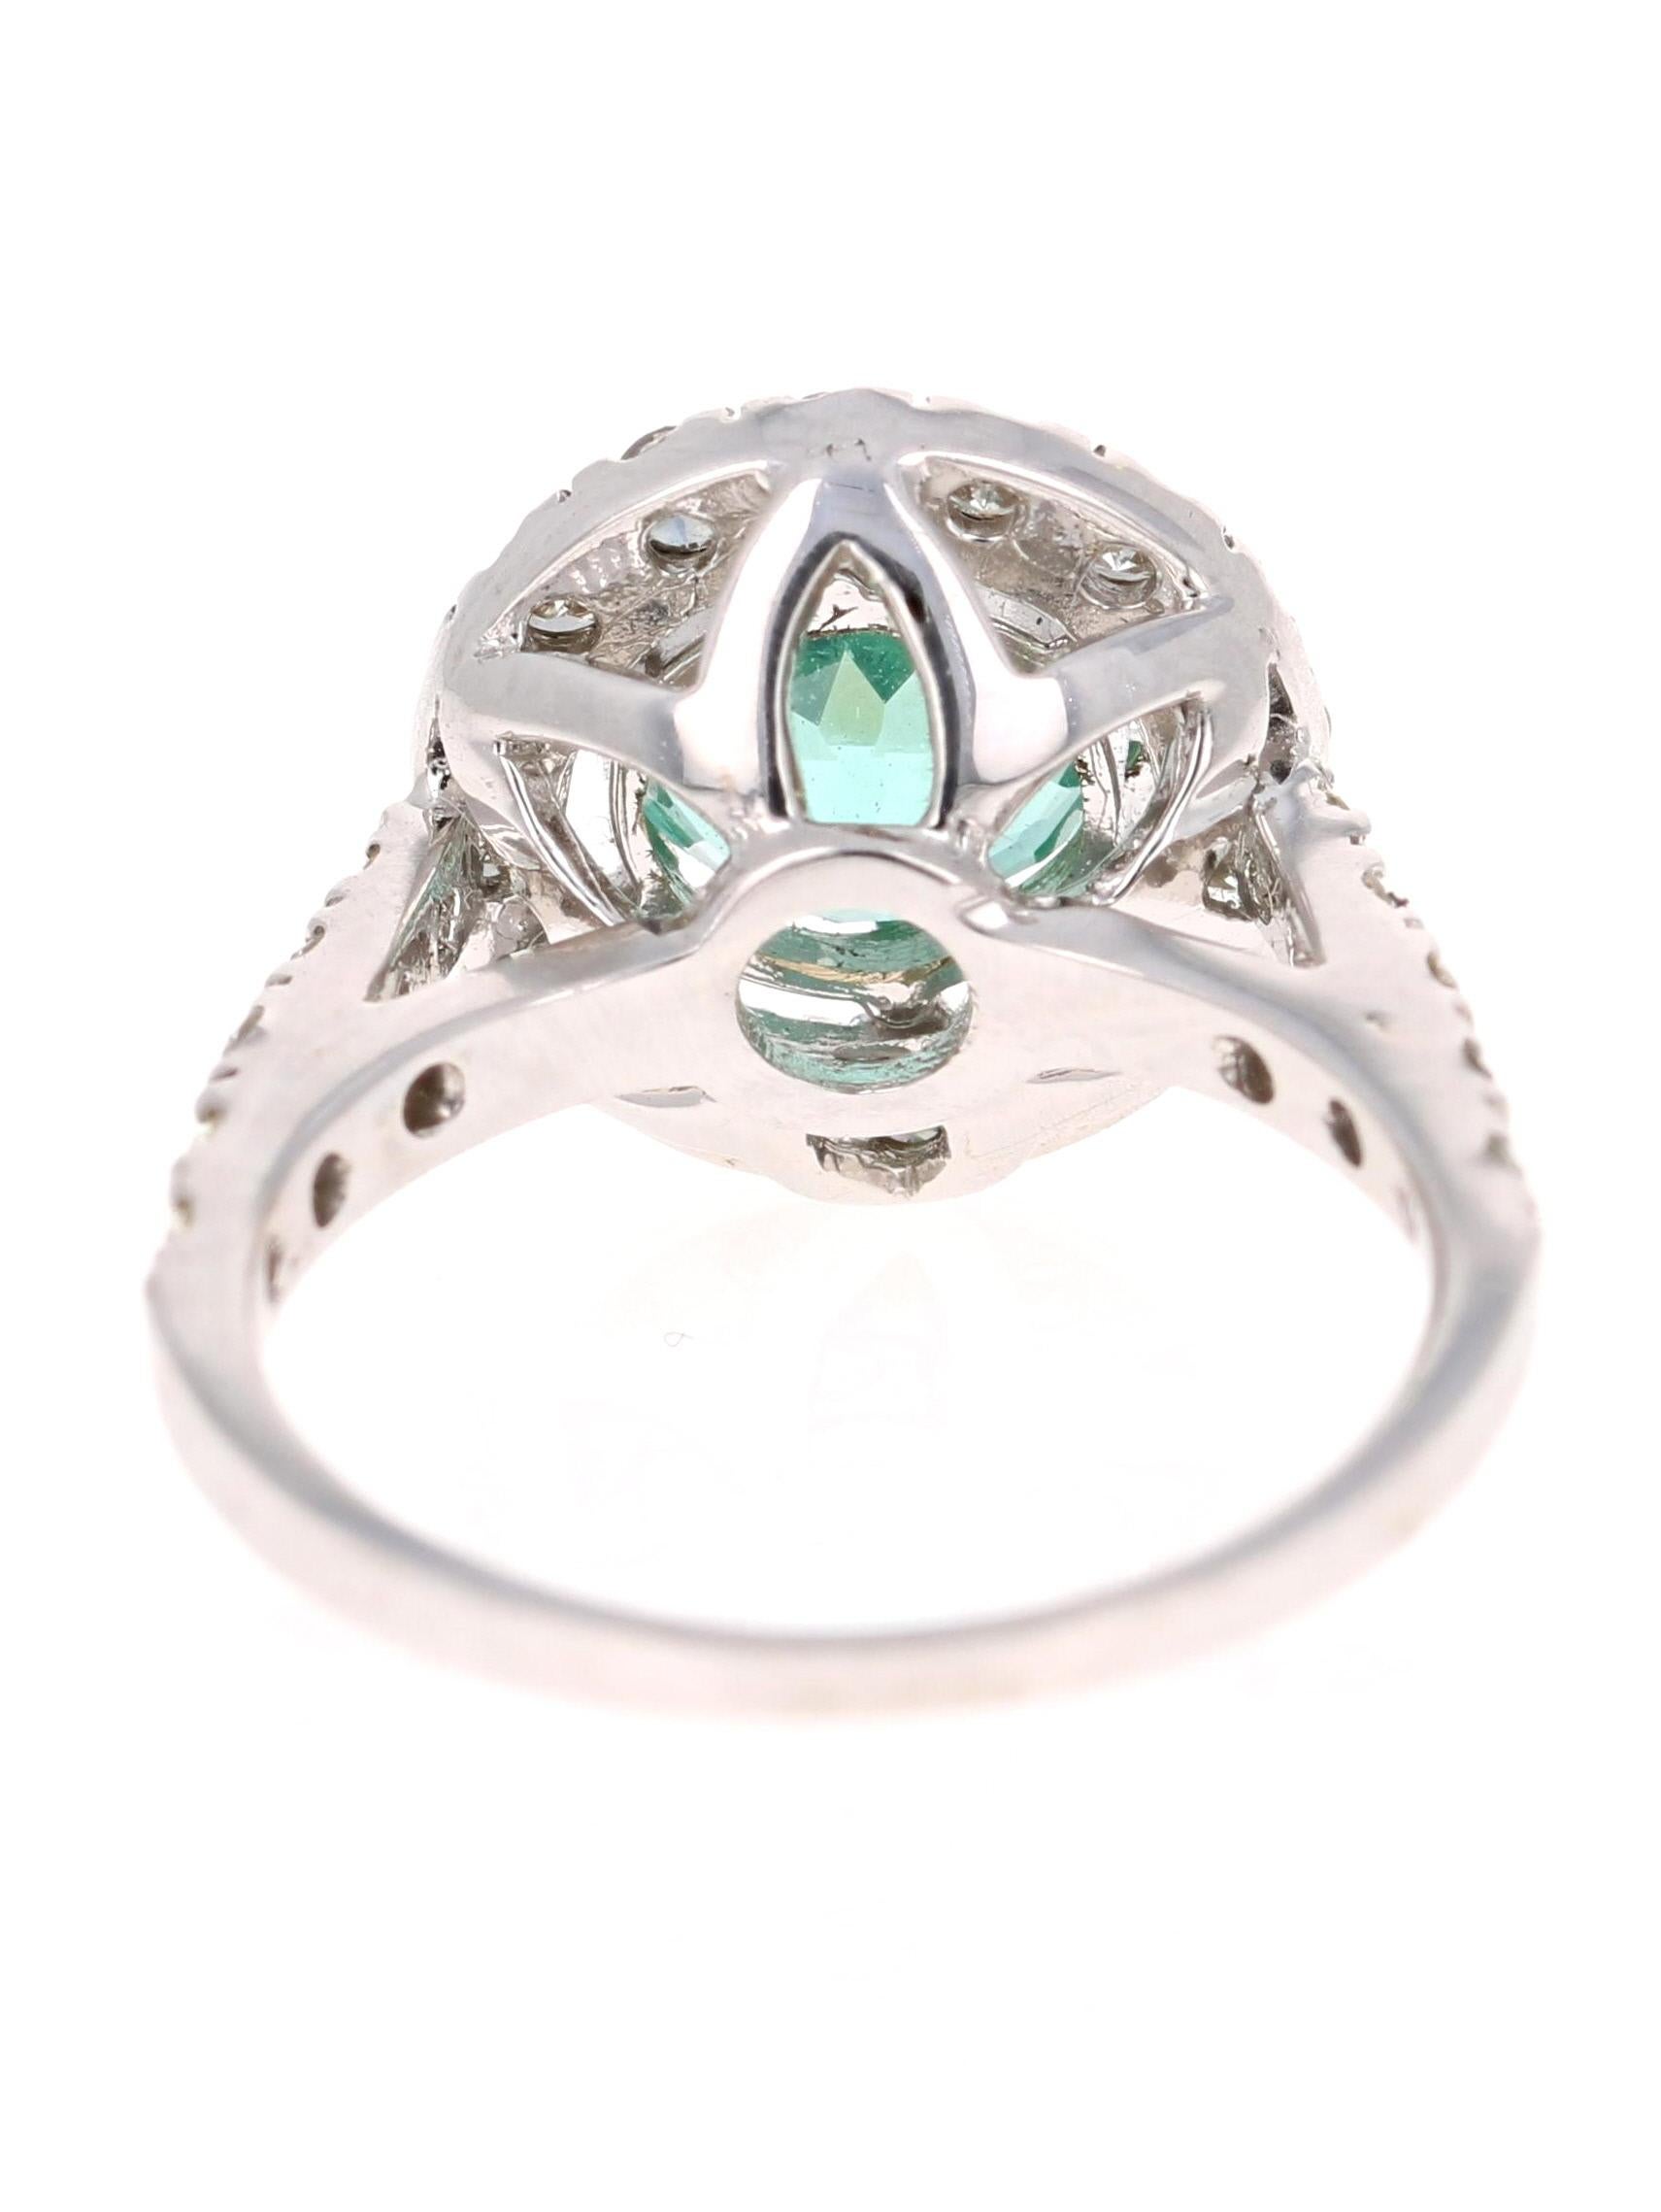 3 karat diamond engagement ring